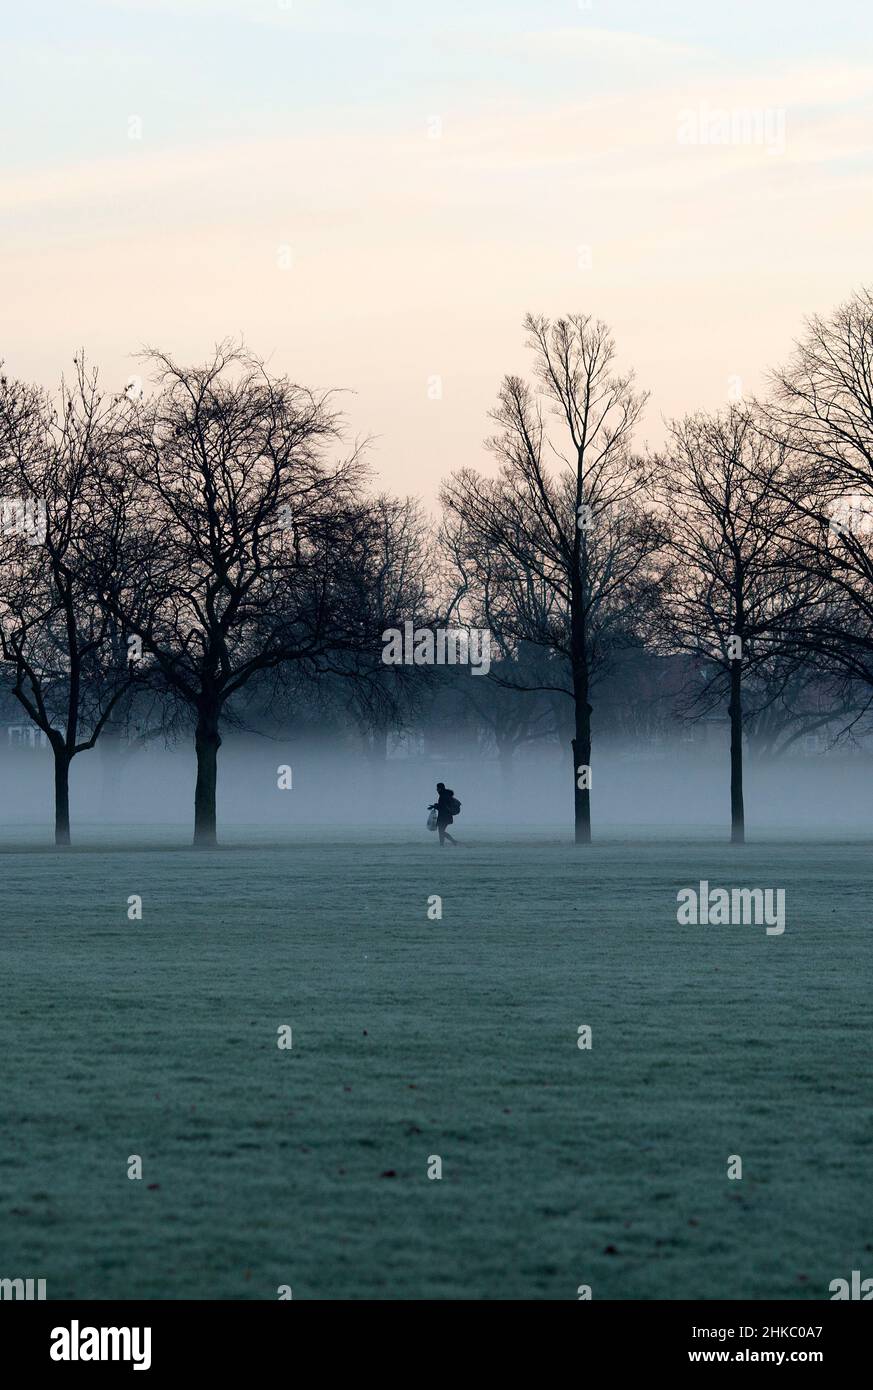 Les piétons marchent dans un parc couvert de brume à Ilford, dans l'est de Londres, le matin, car la température a chuté. Banque D'Images